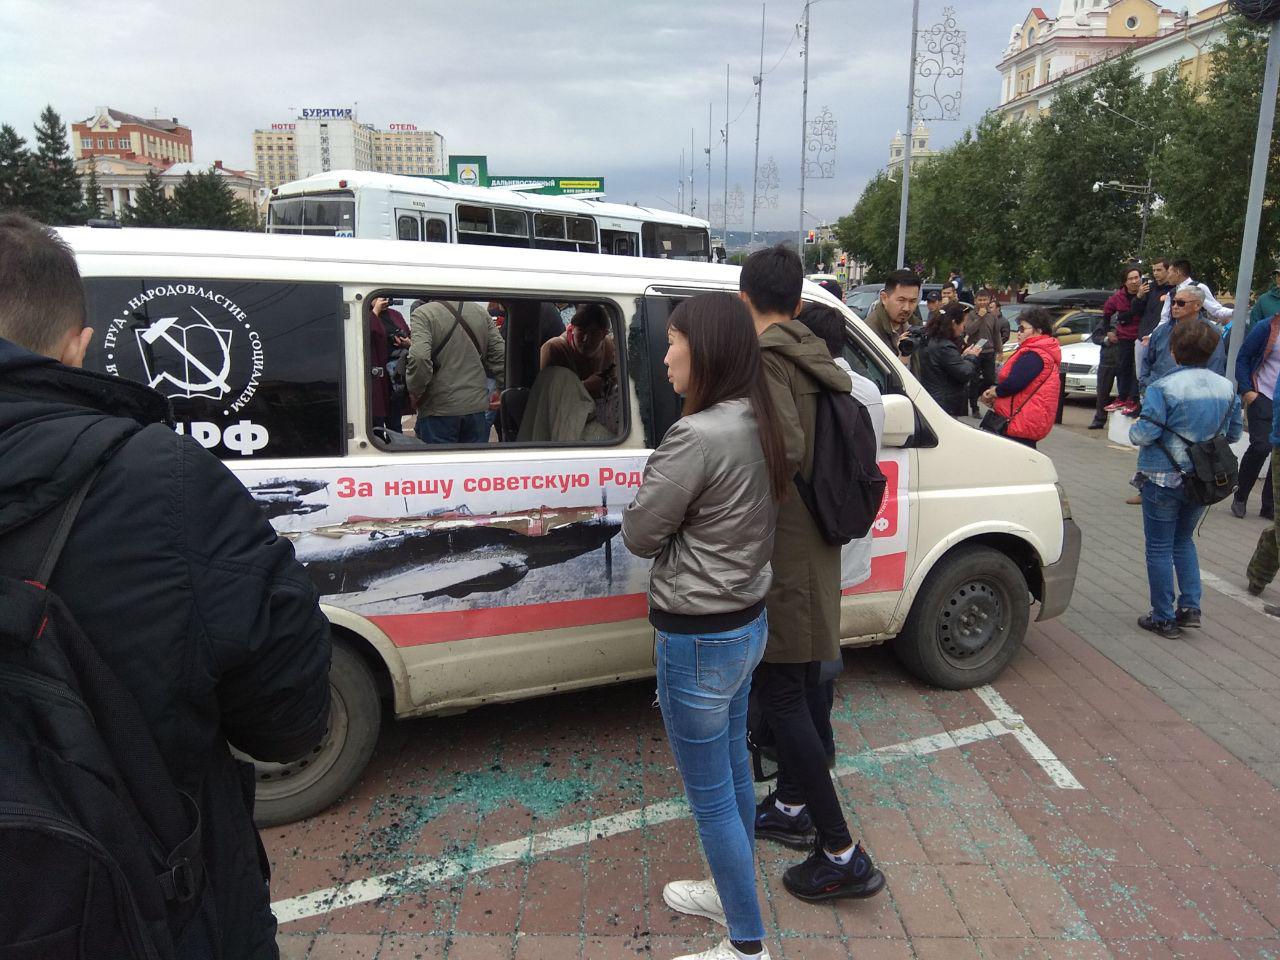 Фото Лидеров стихийного митинга в Улан-Удэ вытащили из автобуса, выбив стекла ОБНОВЛЯЕТСЯ